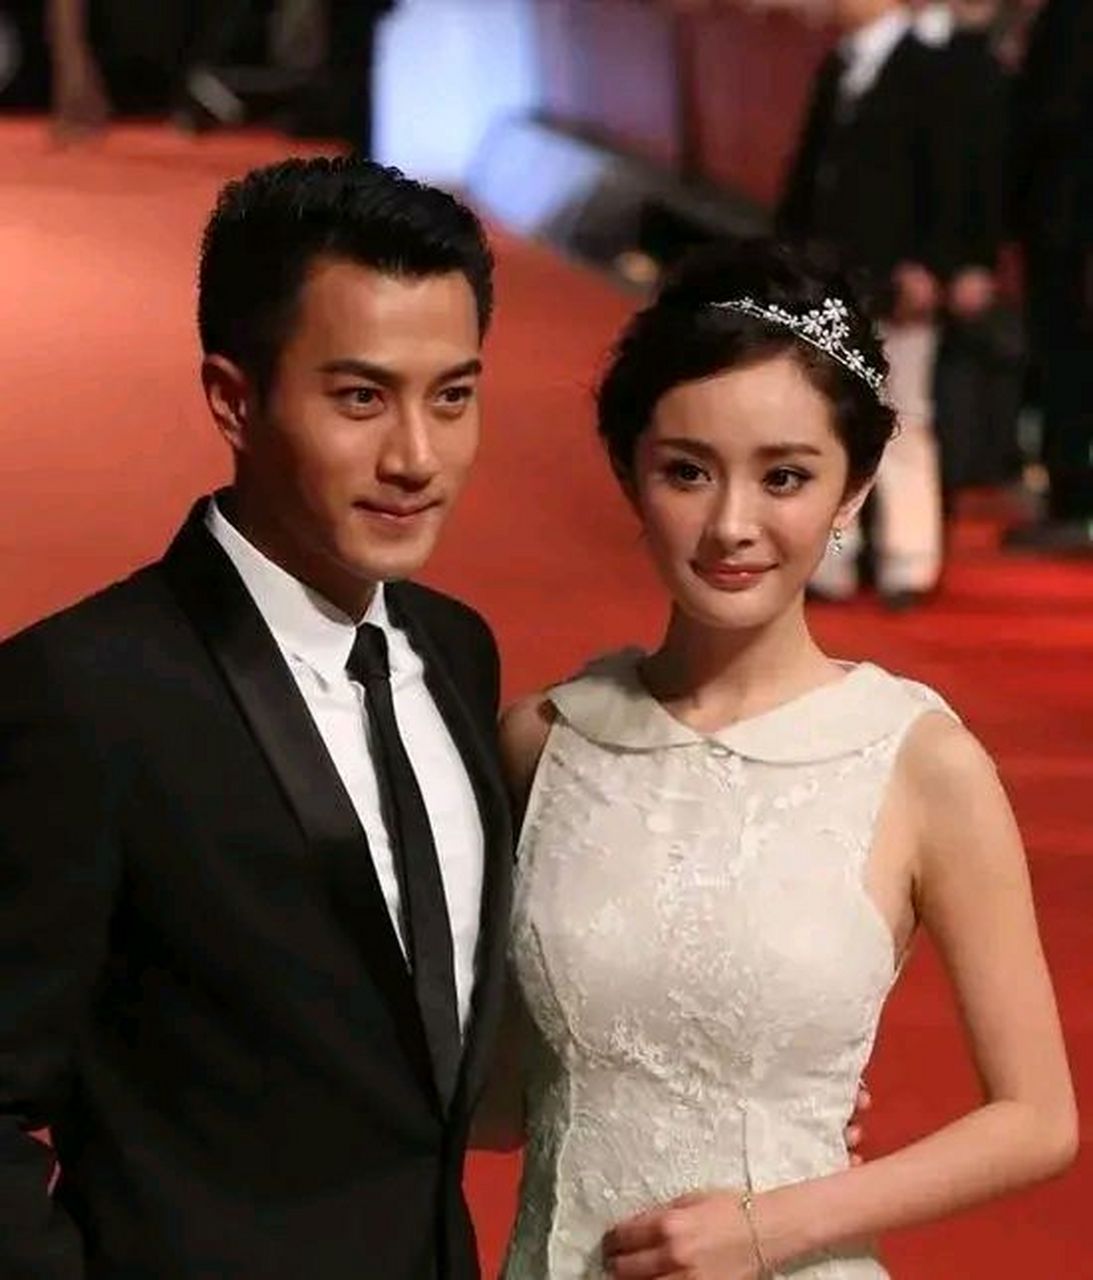 刘凯威终于说出复婚的念头,太意外了  演员刘恺威在几年前与杨幂离婚